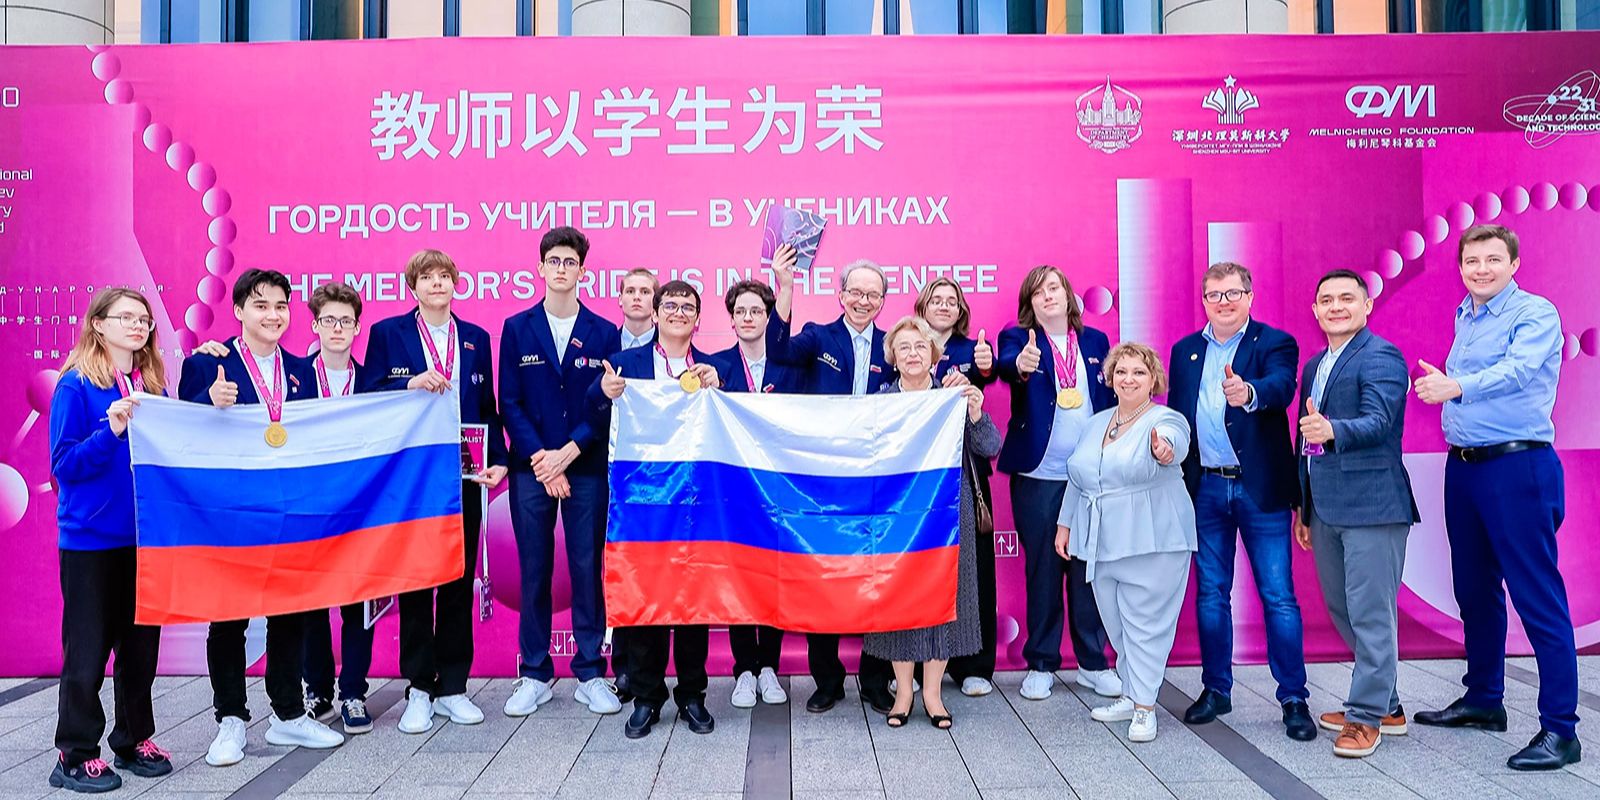 Менделеев бы гордился: как московские школьники победили на международной олимпиаде по химии в Китае